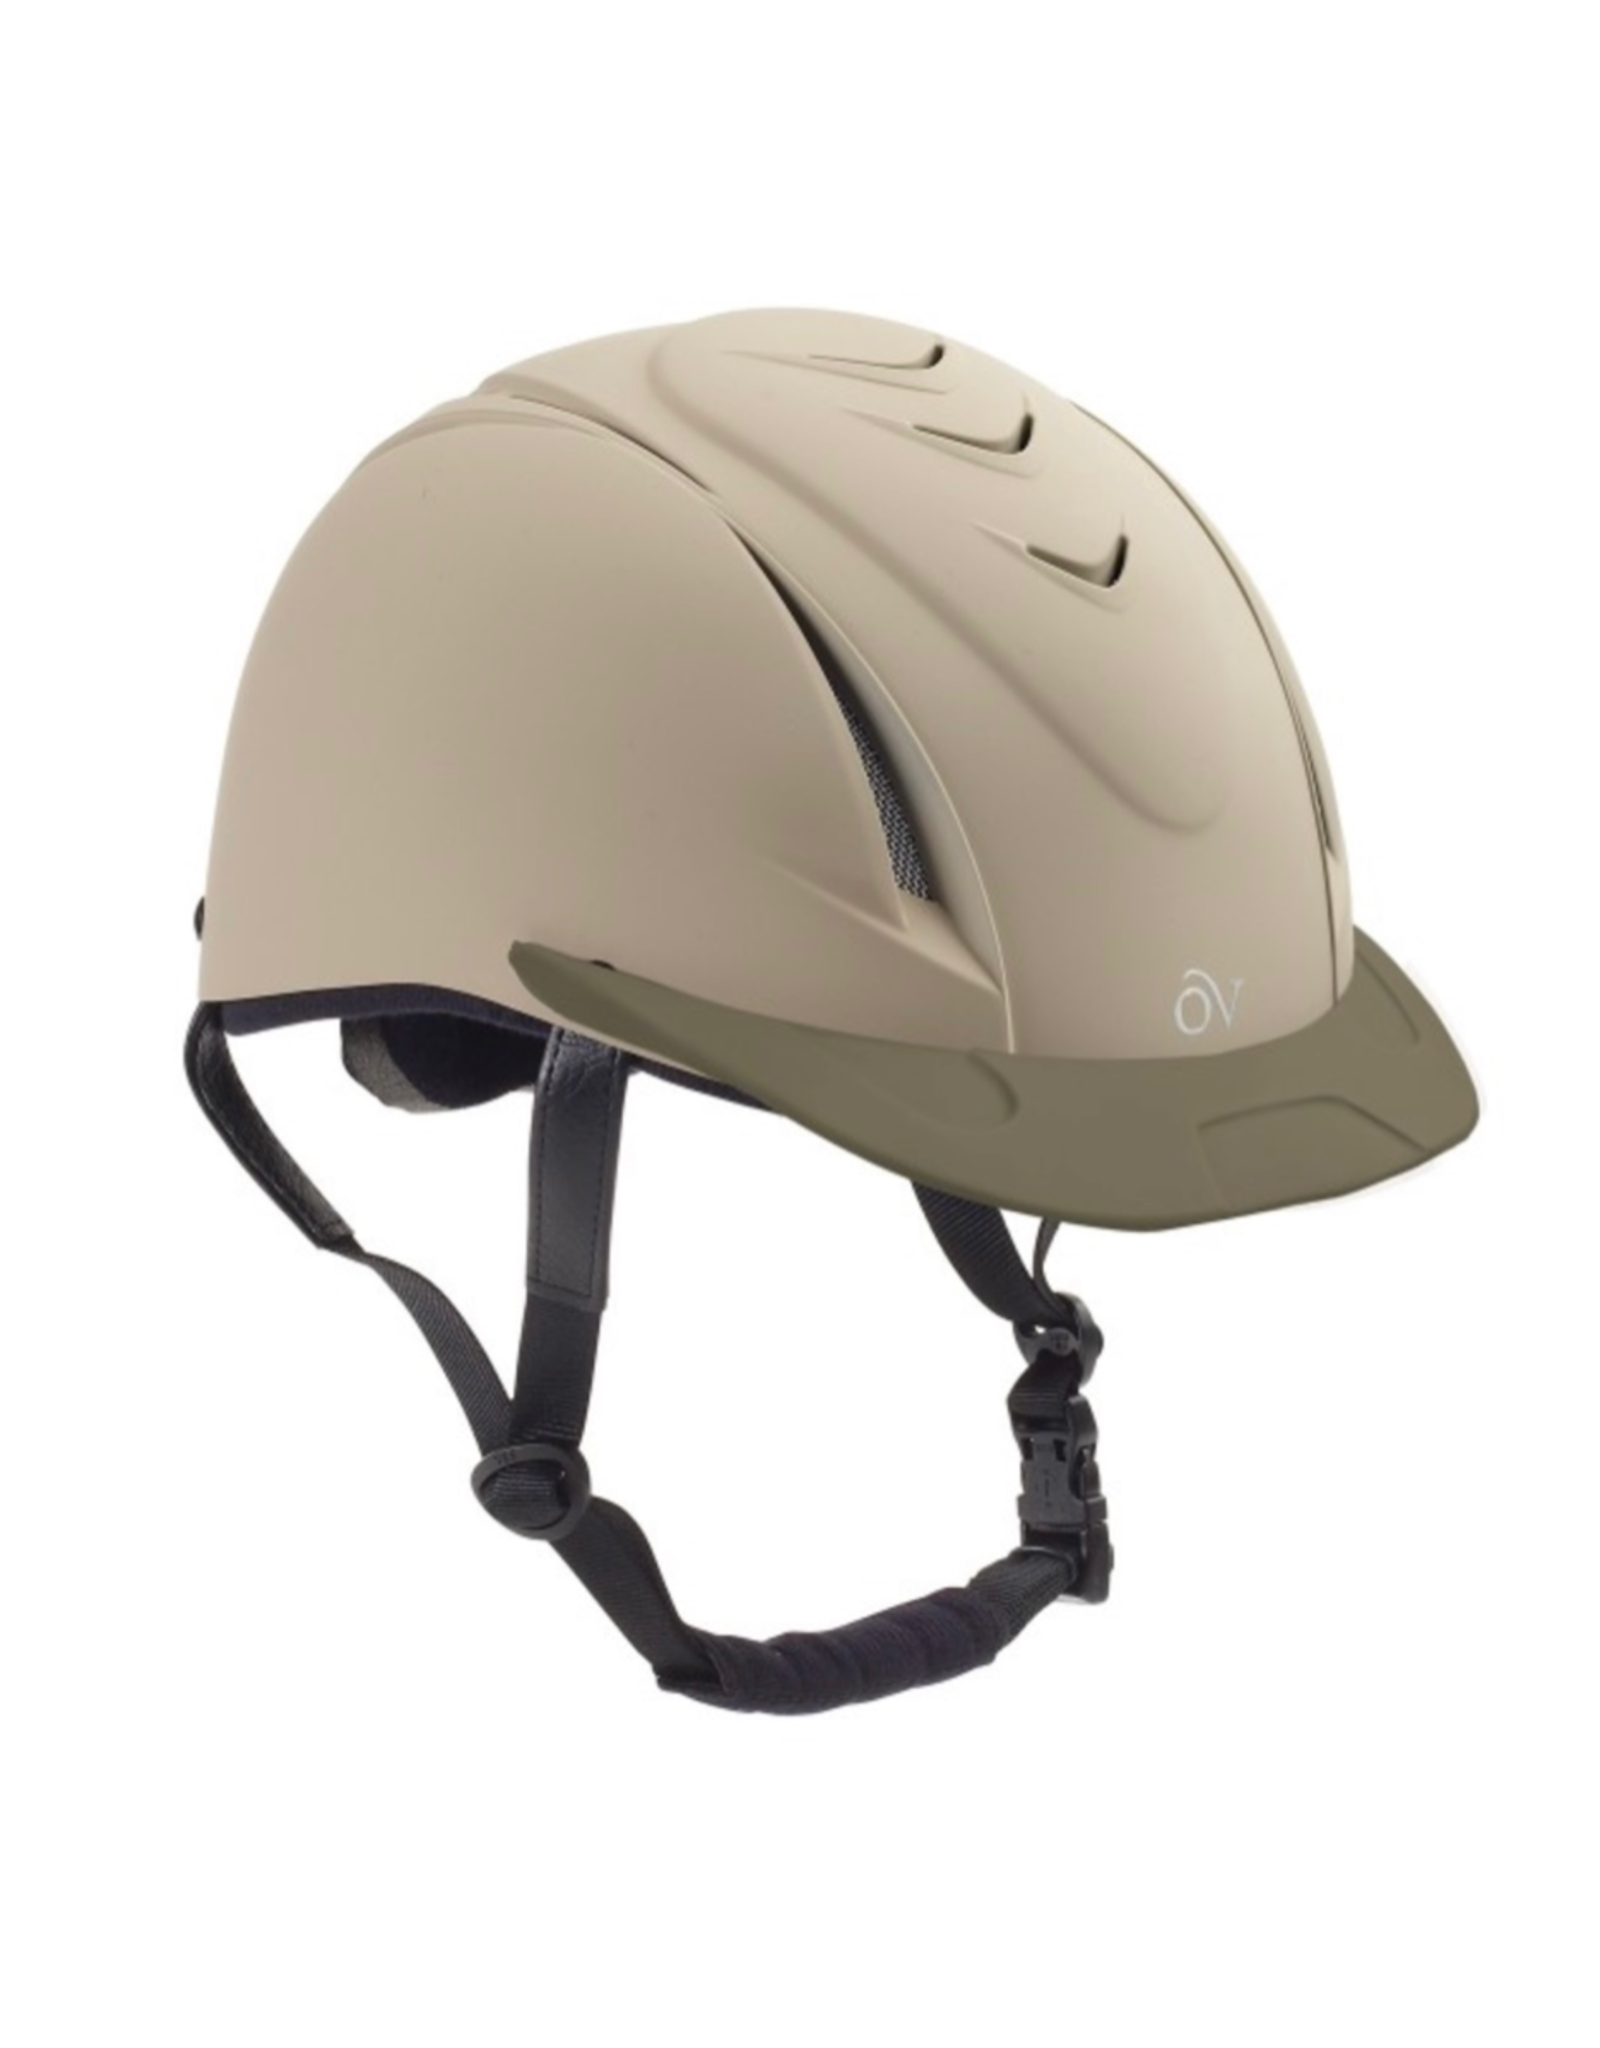 Ovation Delux Schooler Helmet